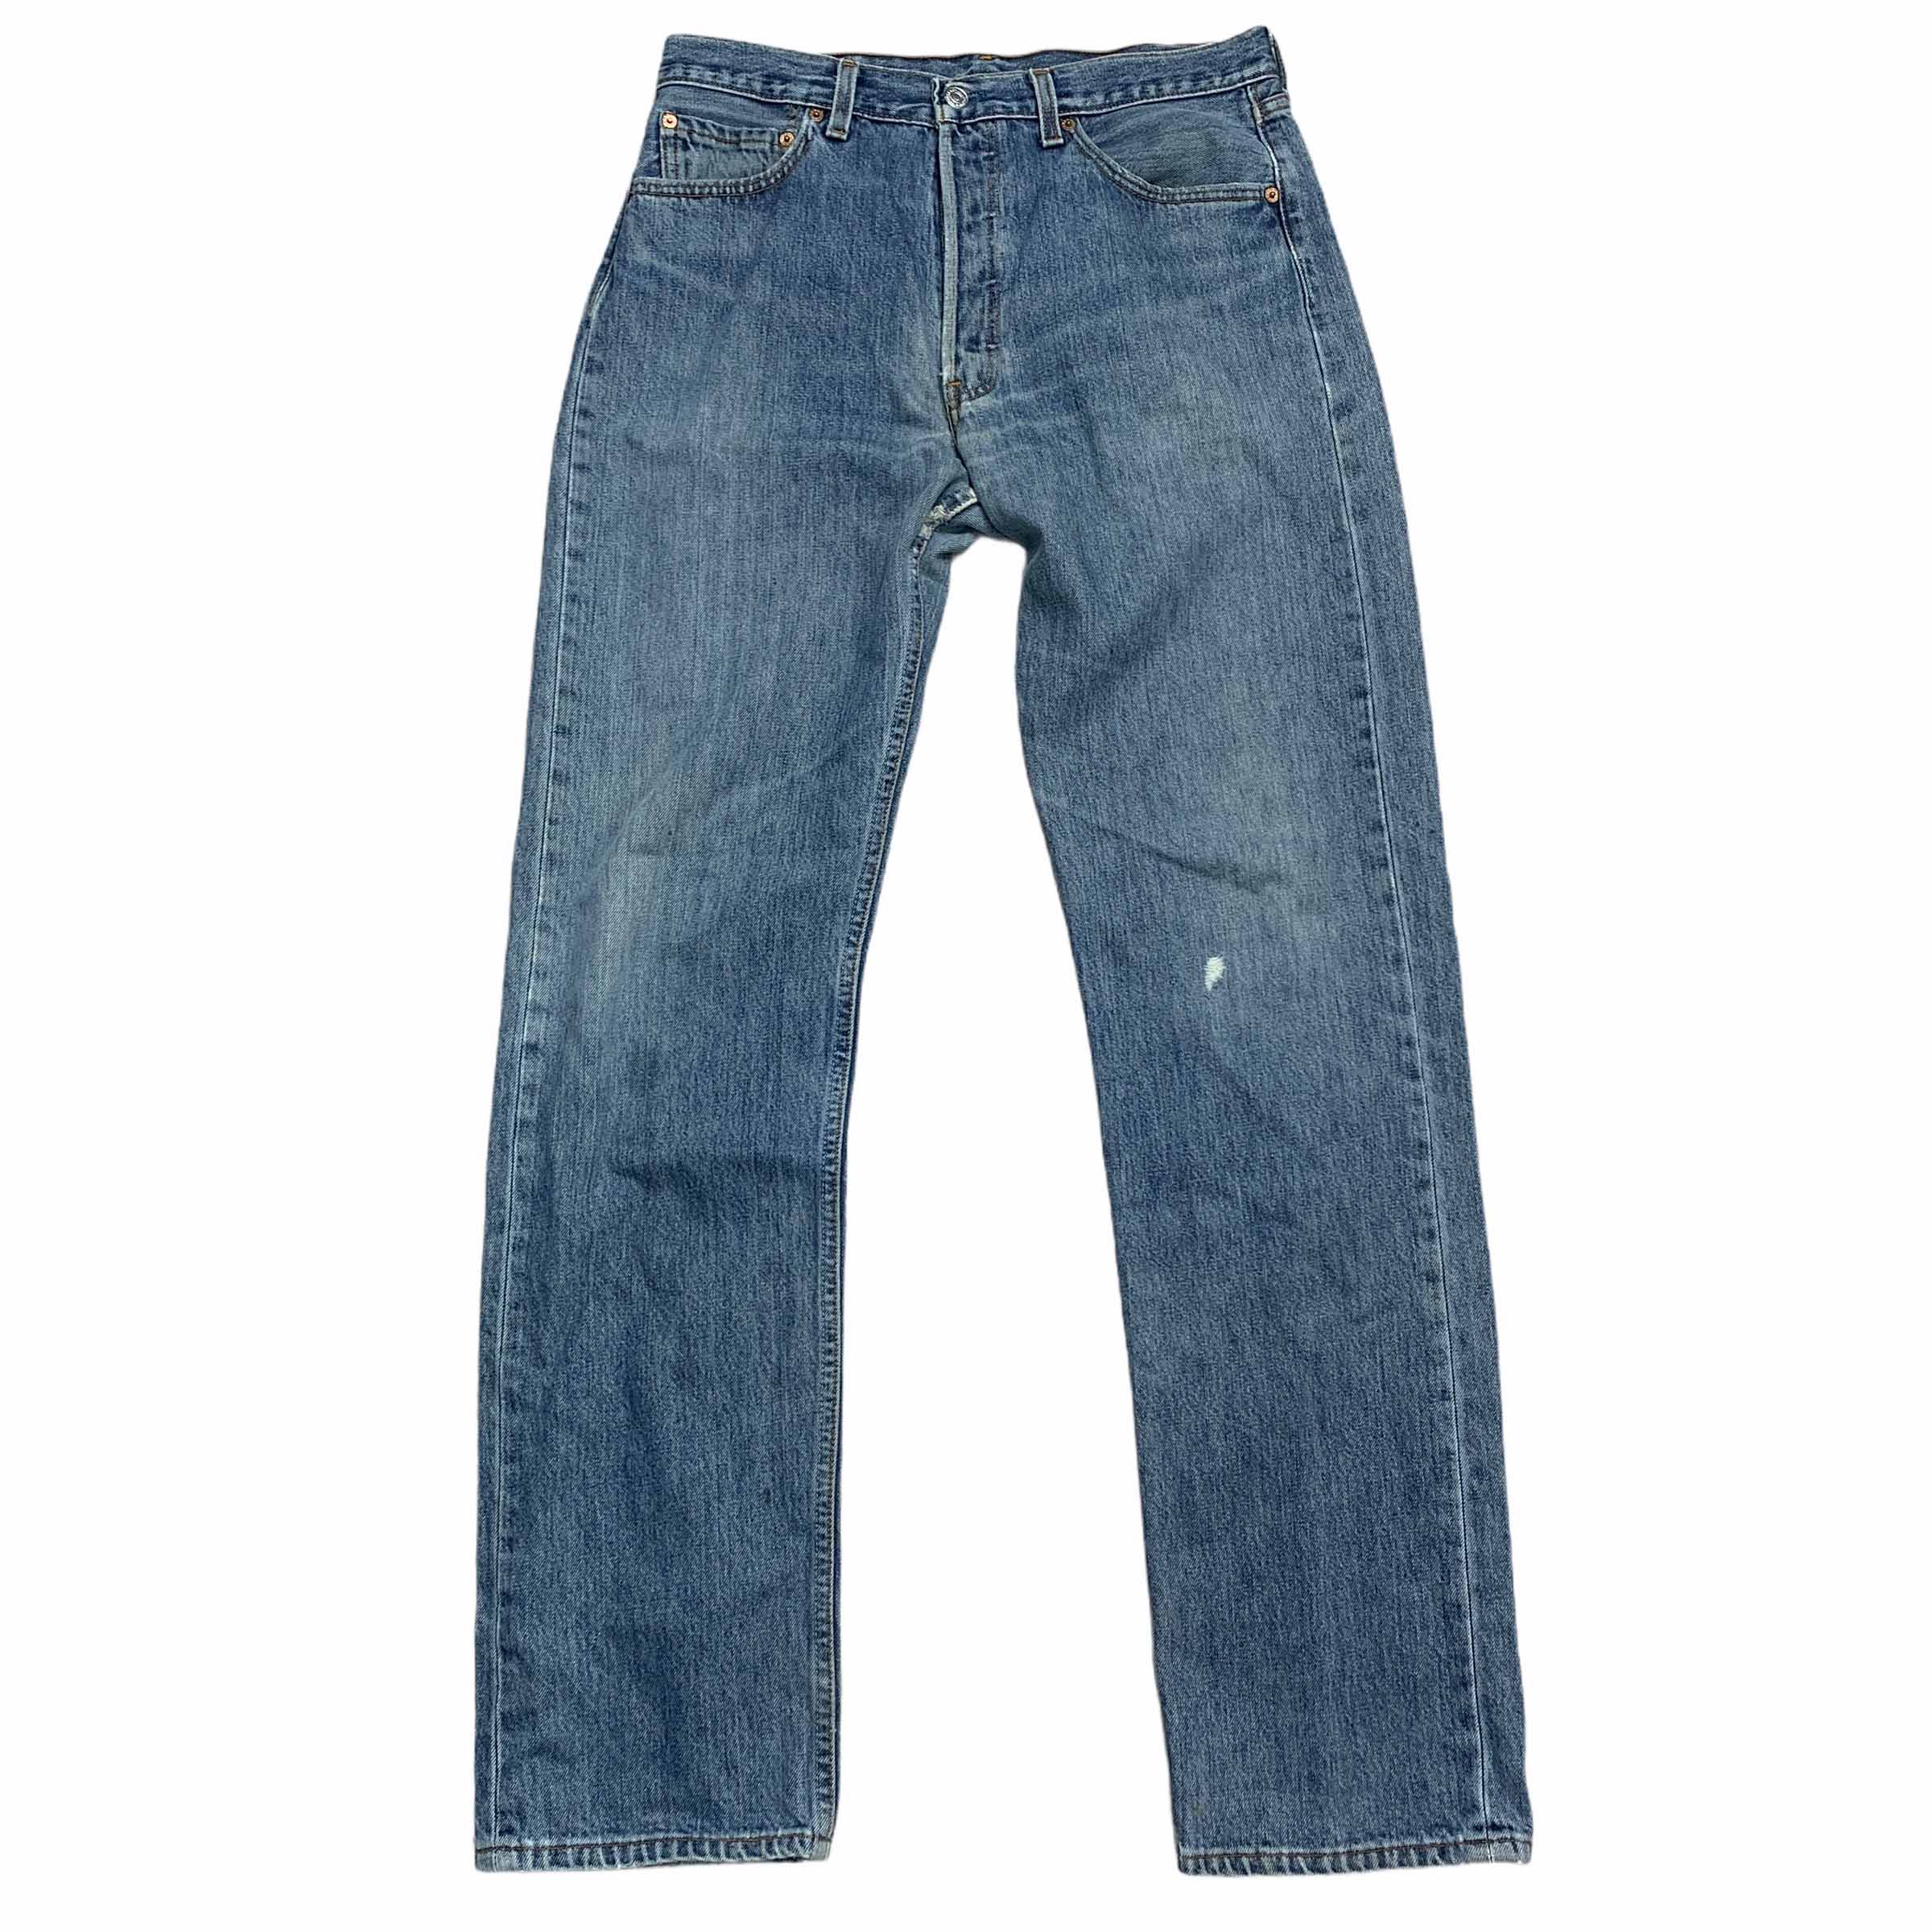 [Levis] (Vintage) 501 Denim pants - Size 33/34